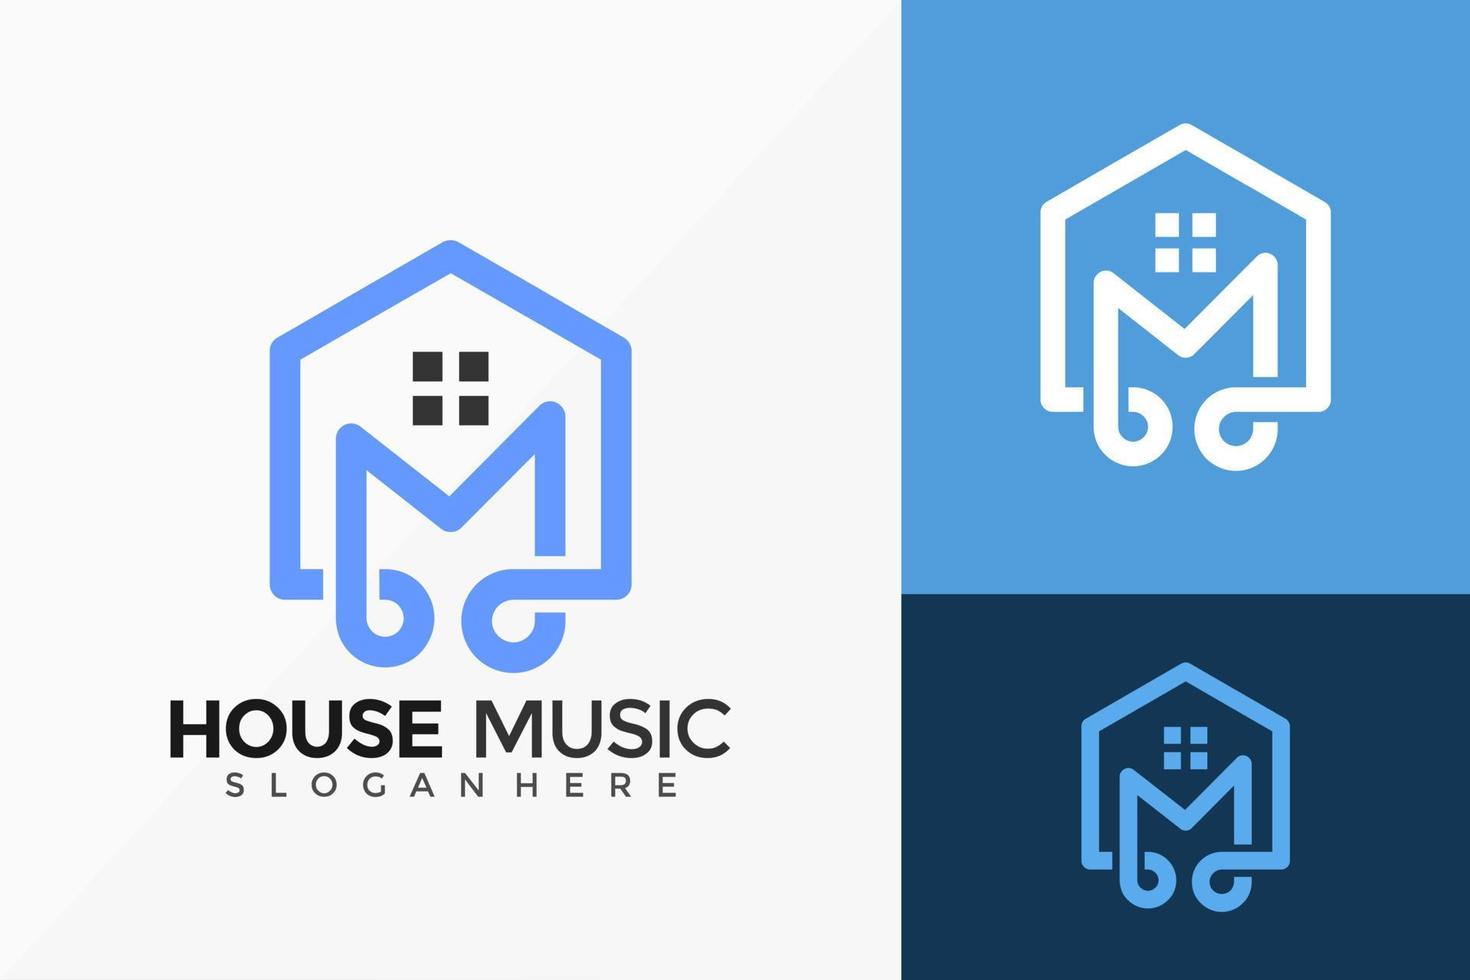 création de logo de musique house. conception de logos idée moderne modèle d'illustration vectorielle vecteur